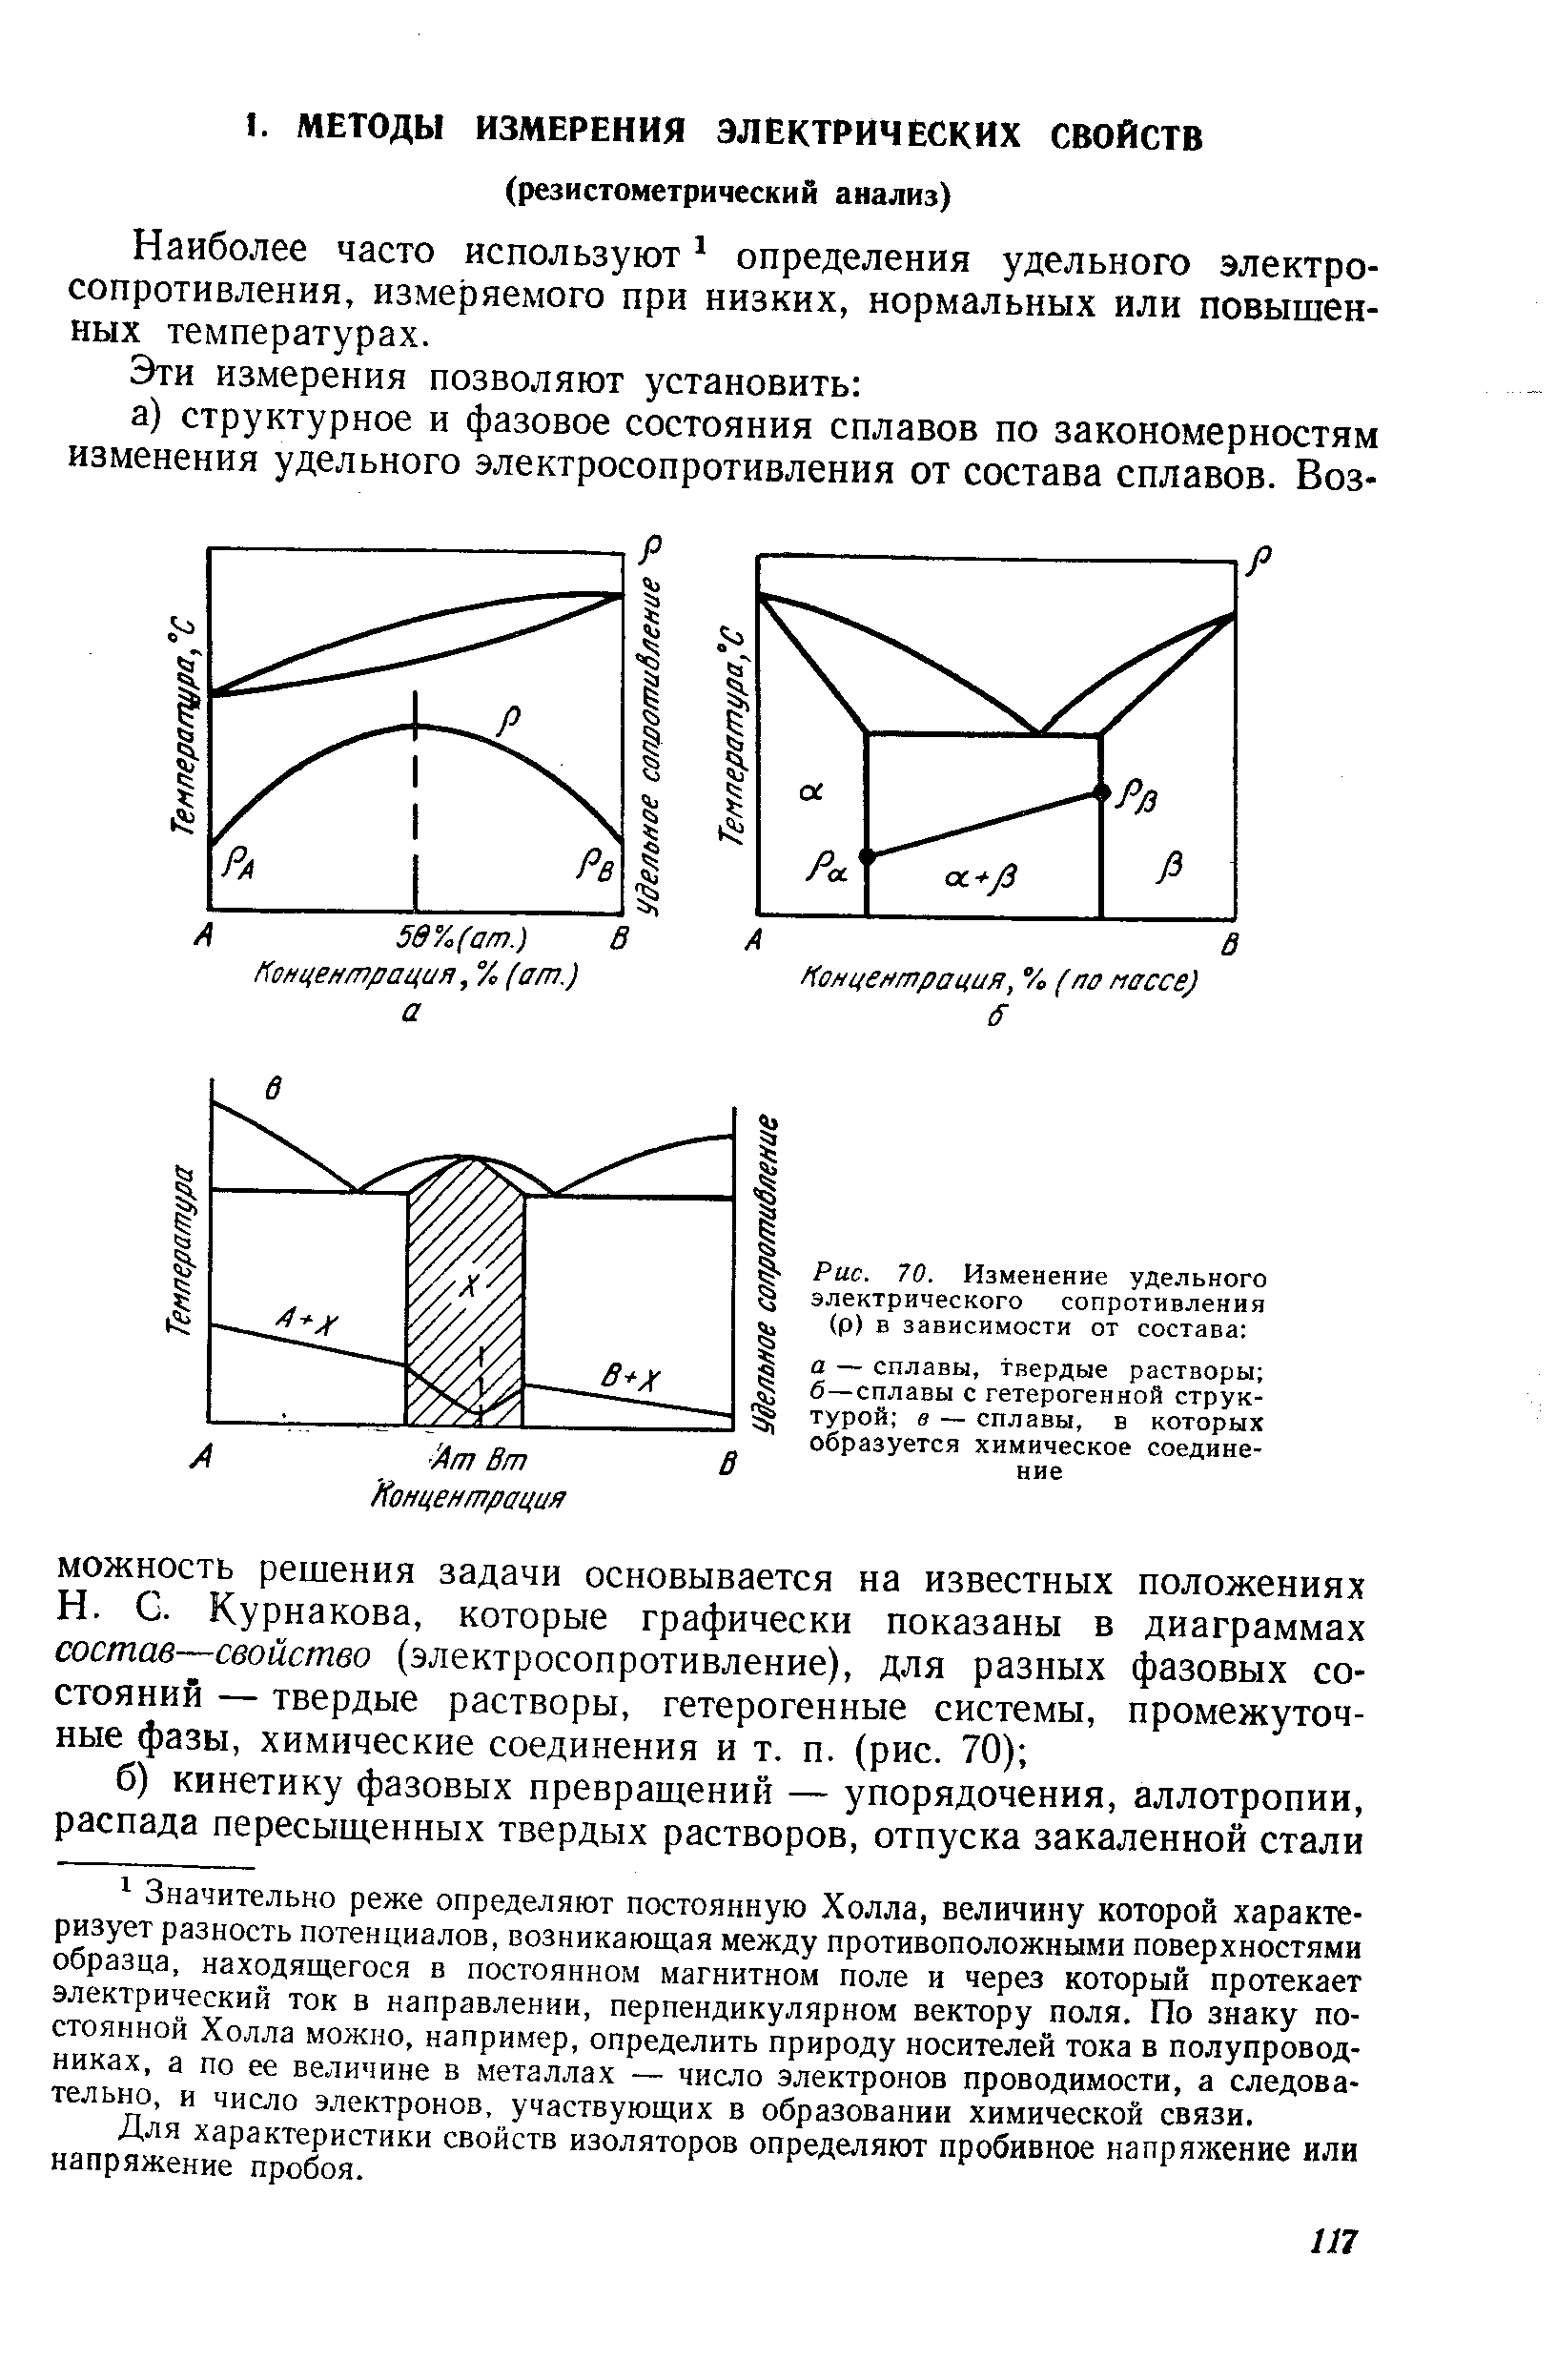 Диаграмма удельного электрического сопротивления Курнакова